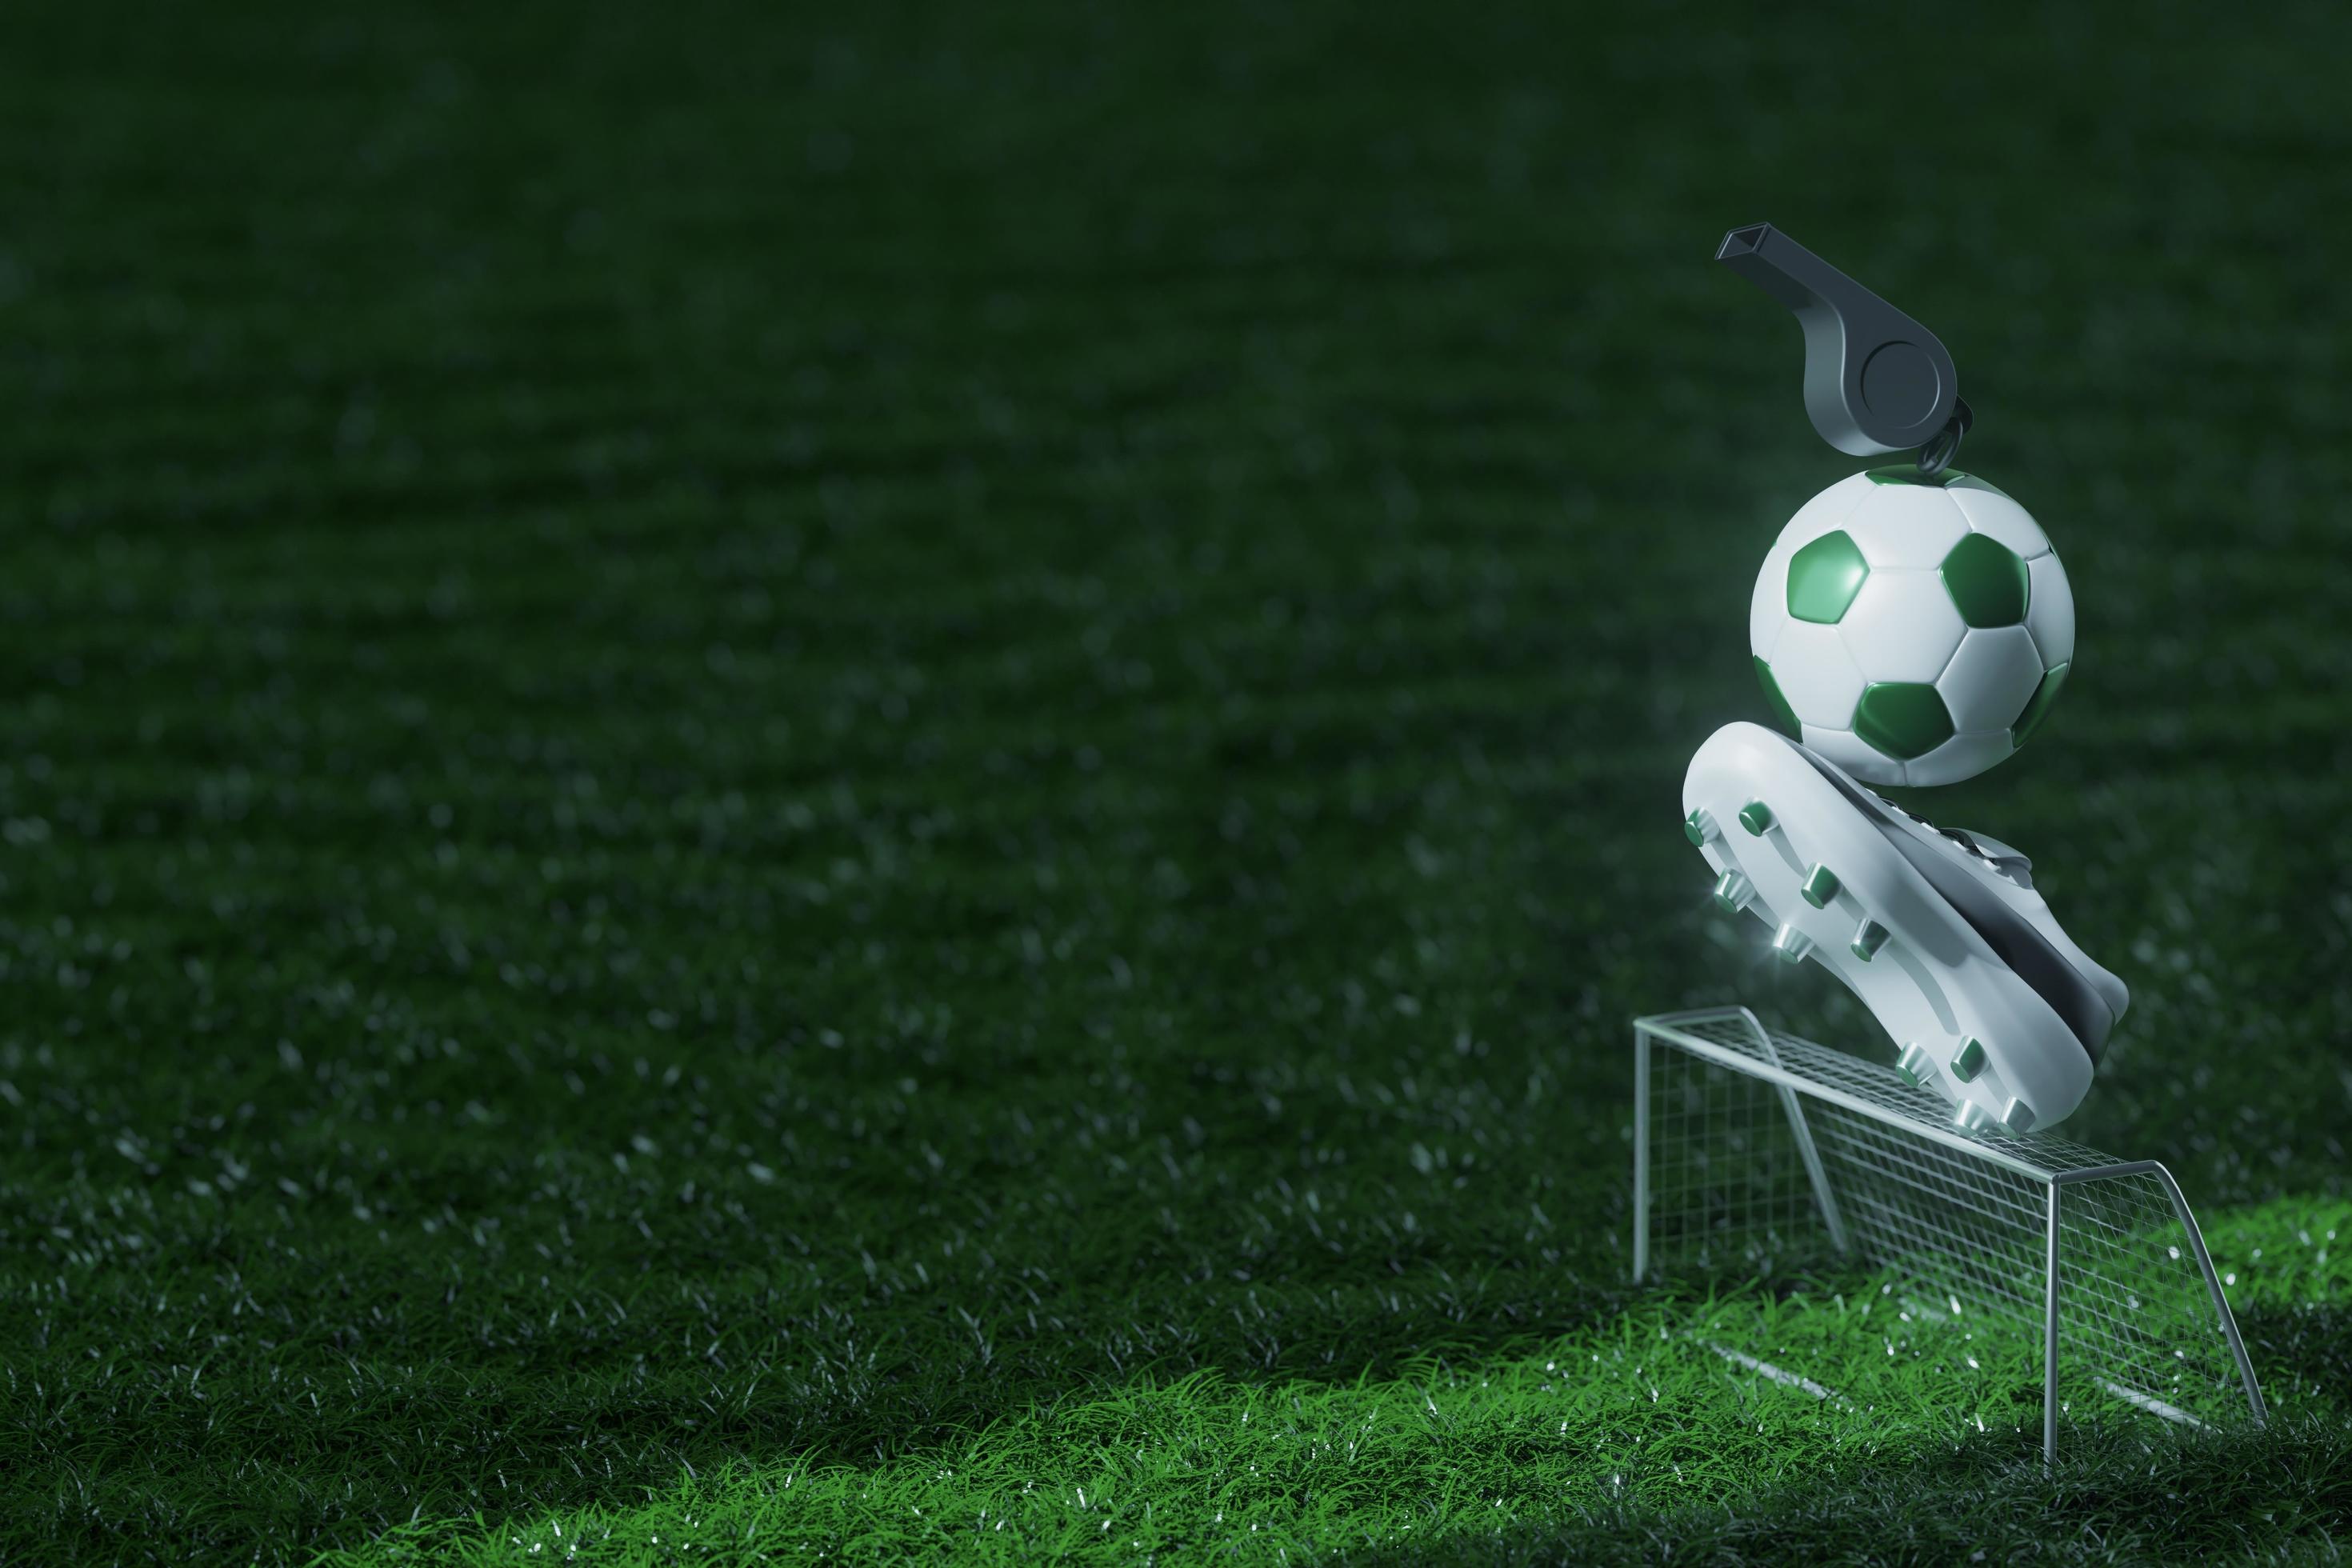 Futebol jogo online conceito, campo de futebol verde, holofotes